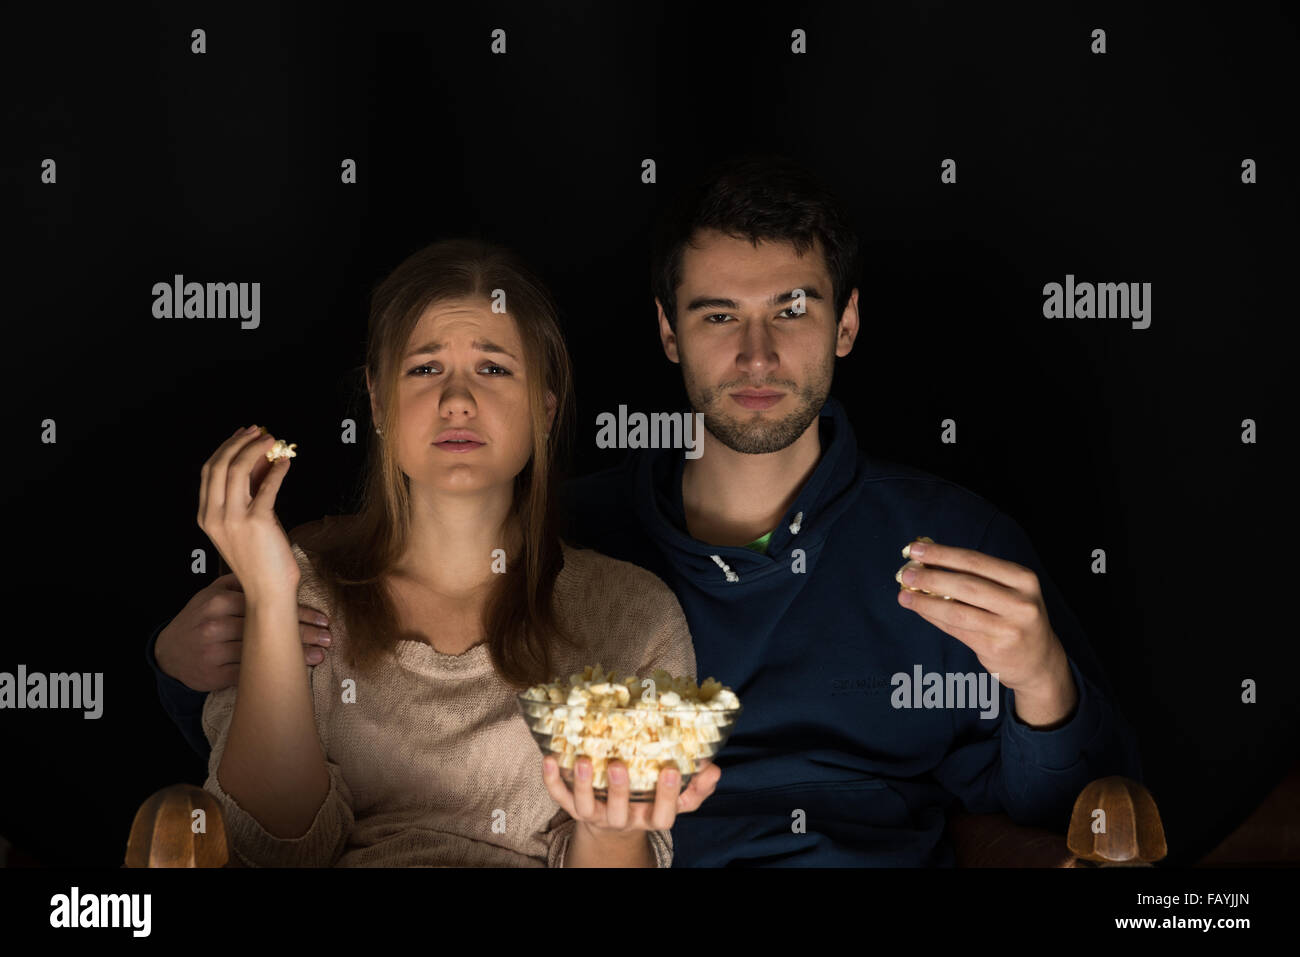 Jeune couple, homme et femme, assise dans la pièce sombre à l'avant de regarder la télévision et film eating popcorn, montrant les émotions Banque D'Images